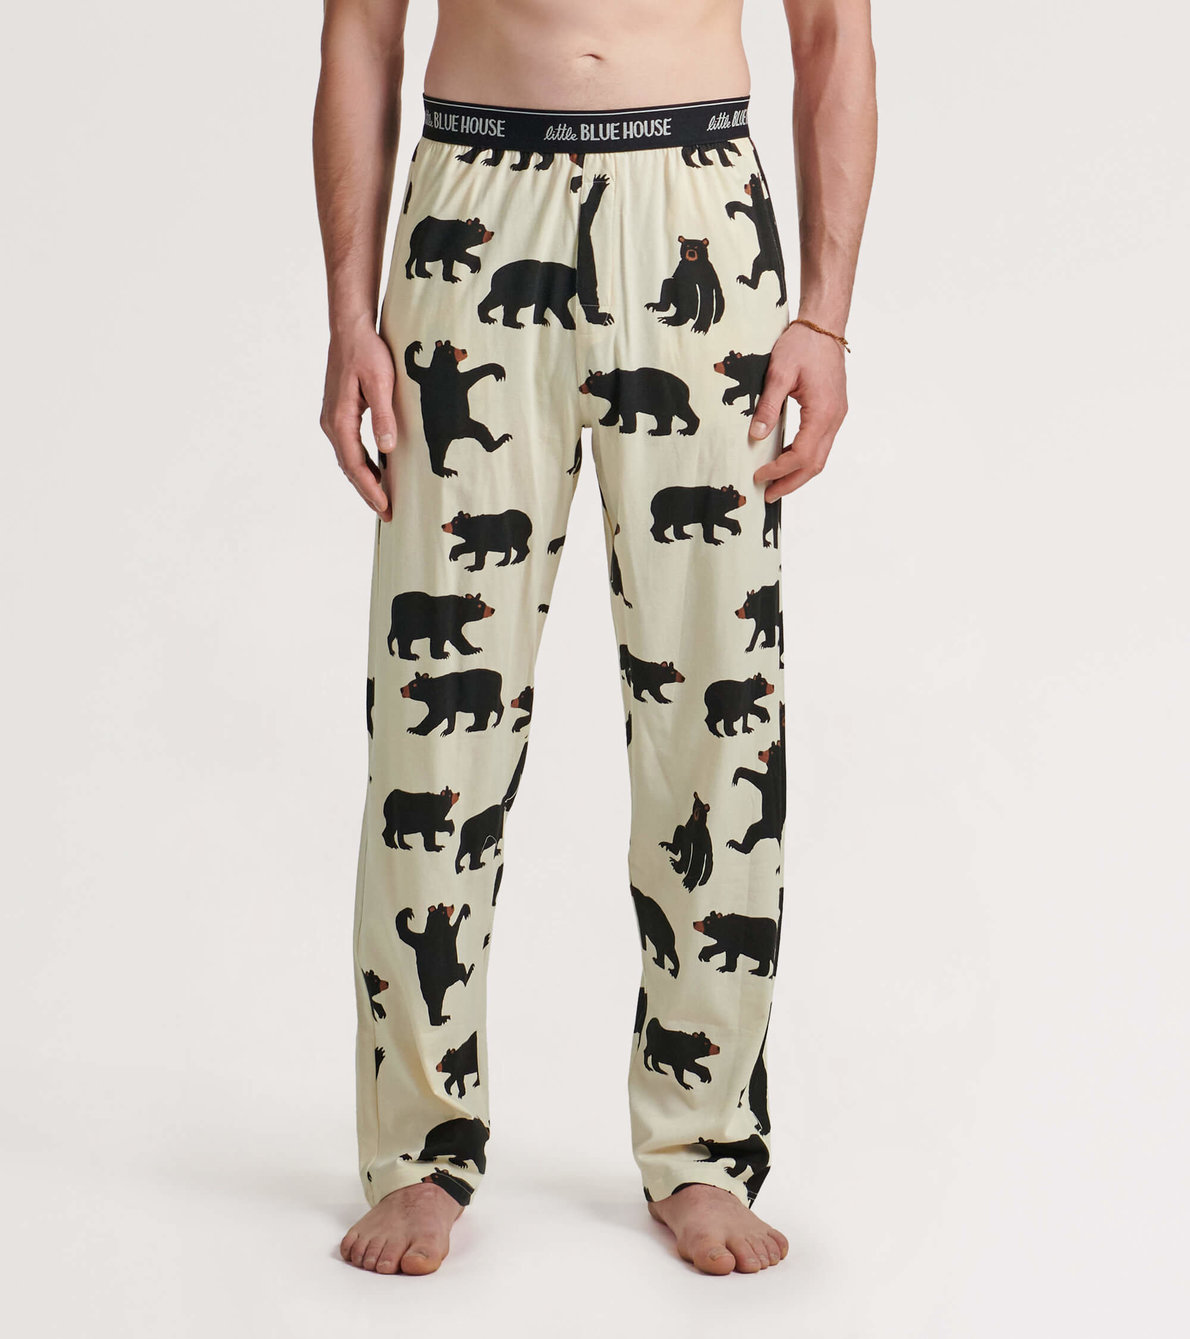 View larger image of Black Bears Men's Jersey Pajama Pants